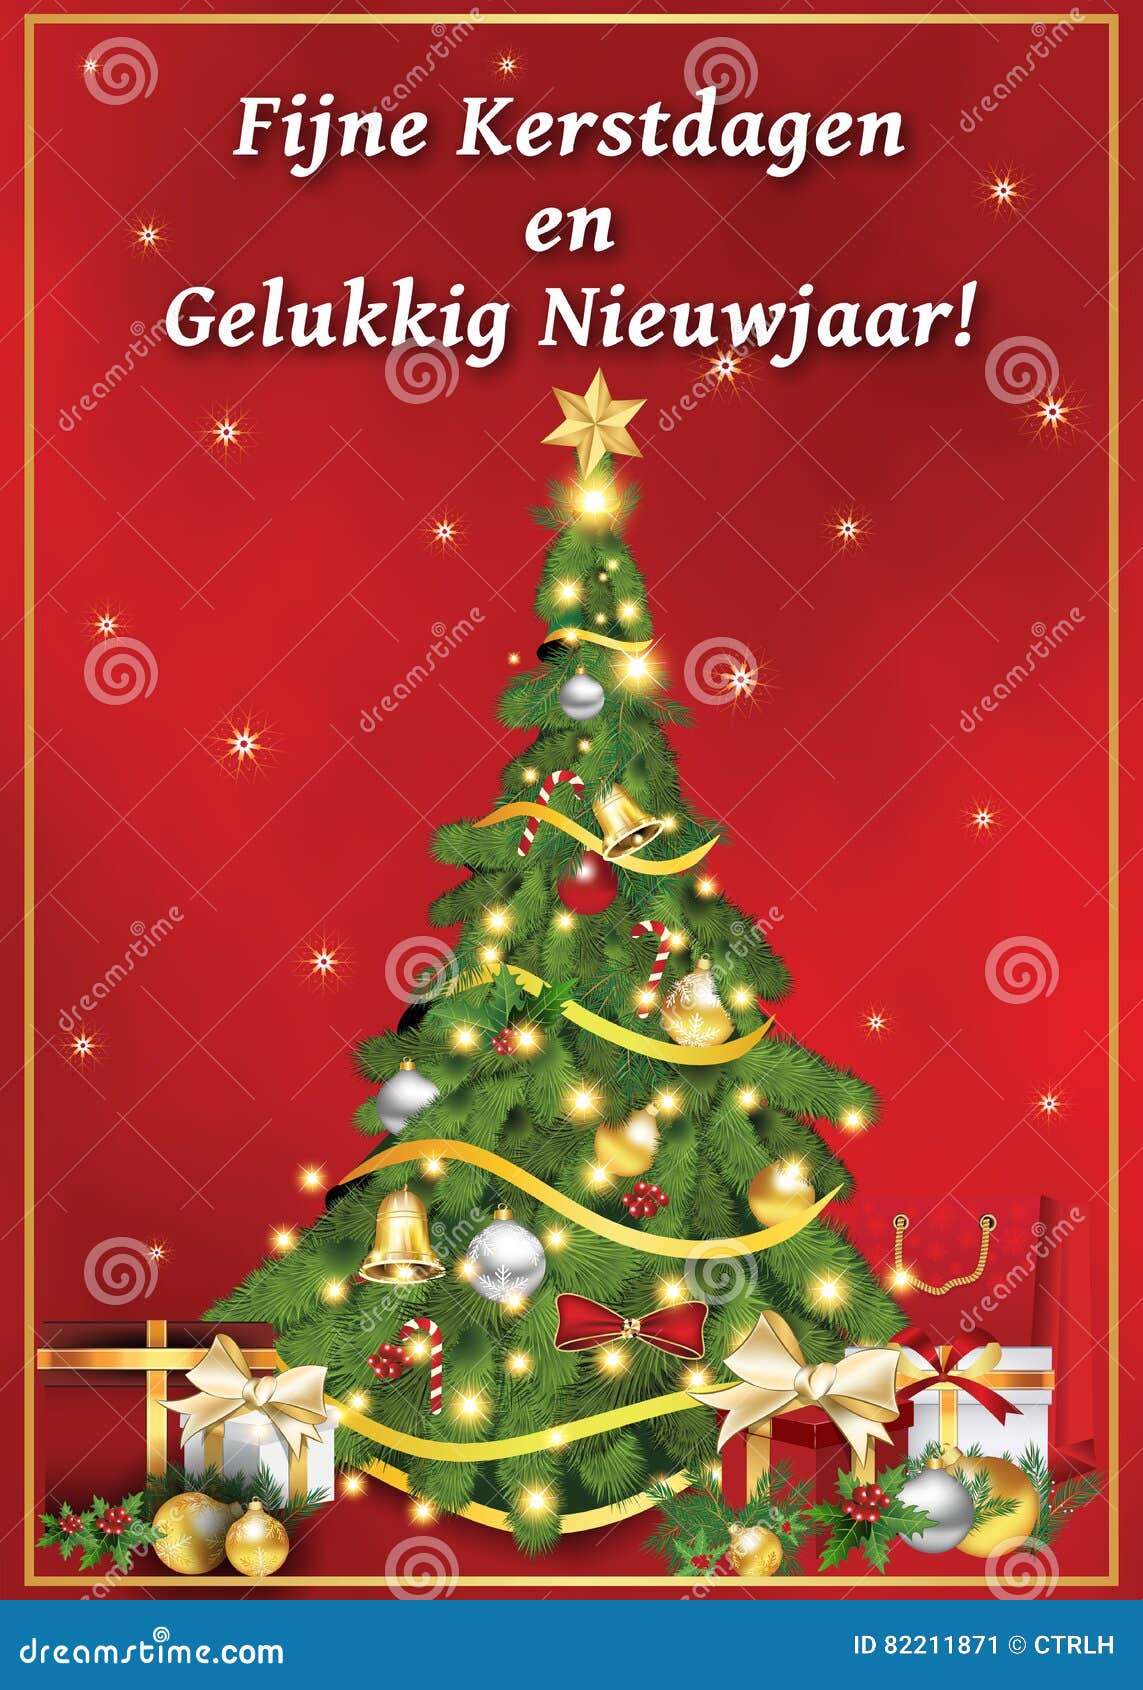 Buon Natale Olandese.Buon Natale E Buon Anno Cartolina D Auguri Stampabile Corporativa Illustrazione Di Stock Illustrazione Di Buon Desideri 82211871